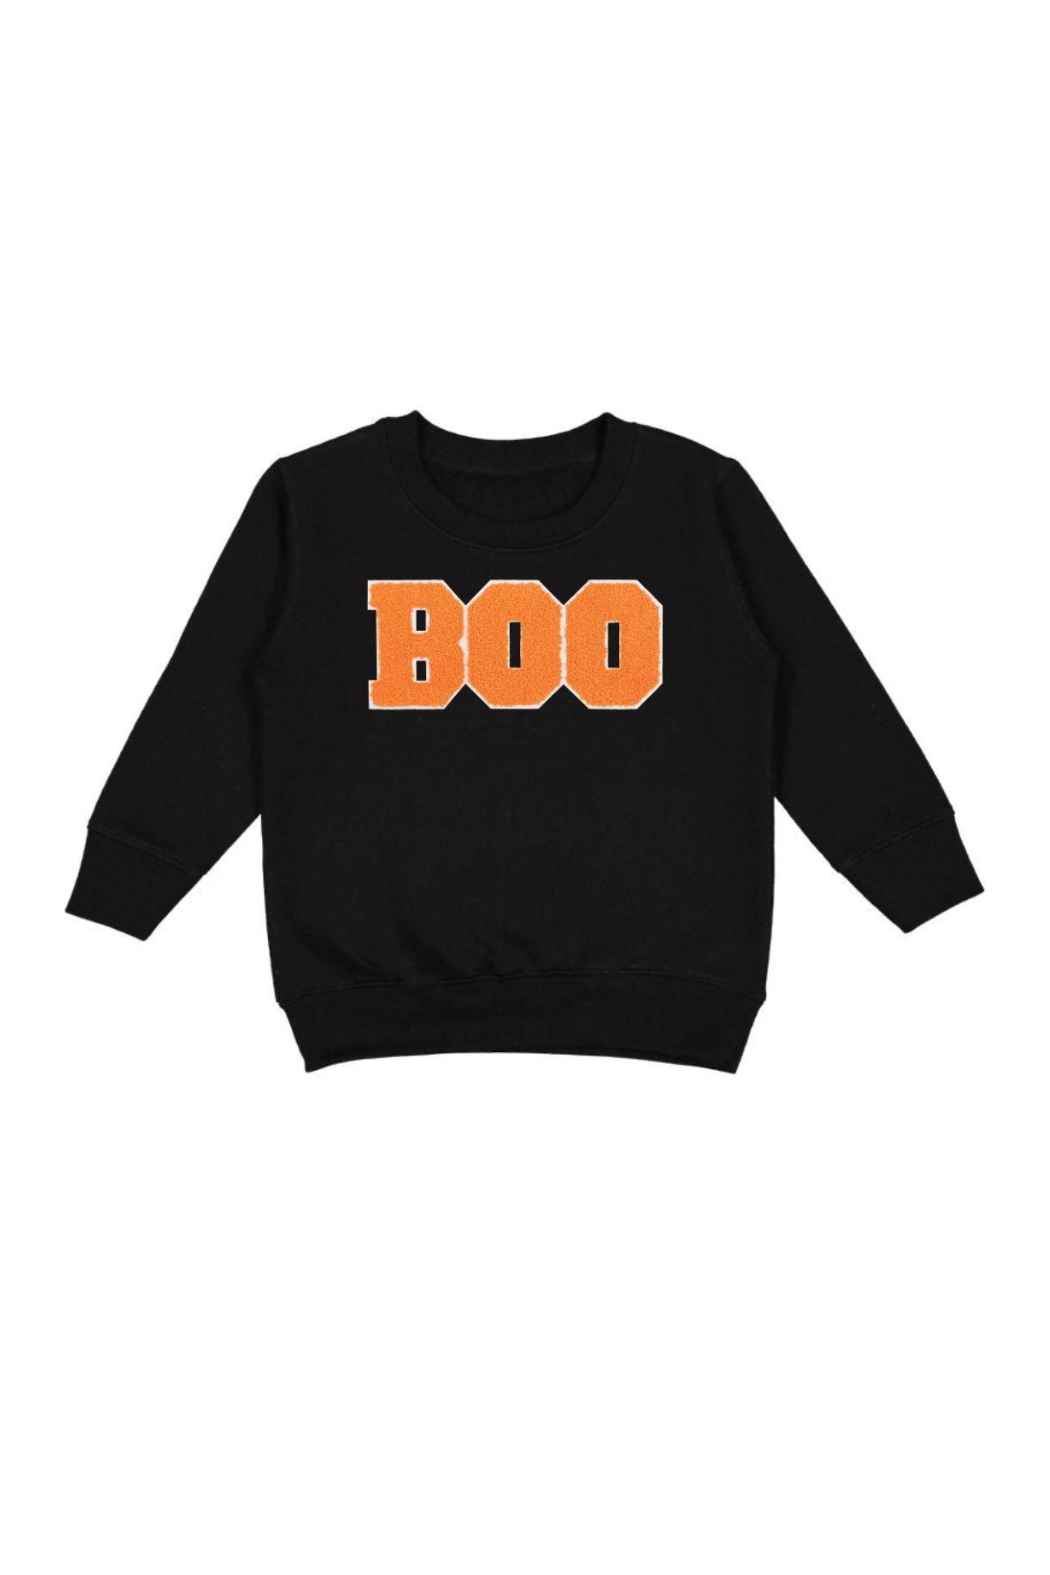 Boo Halloween Tshirt - Crella